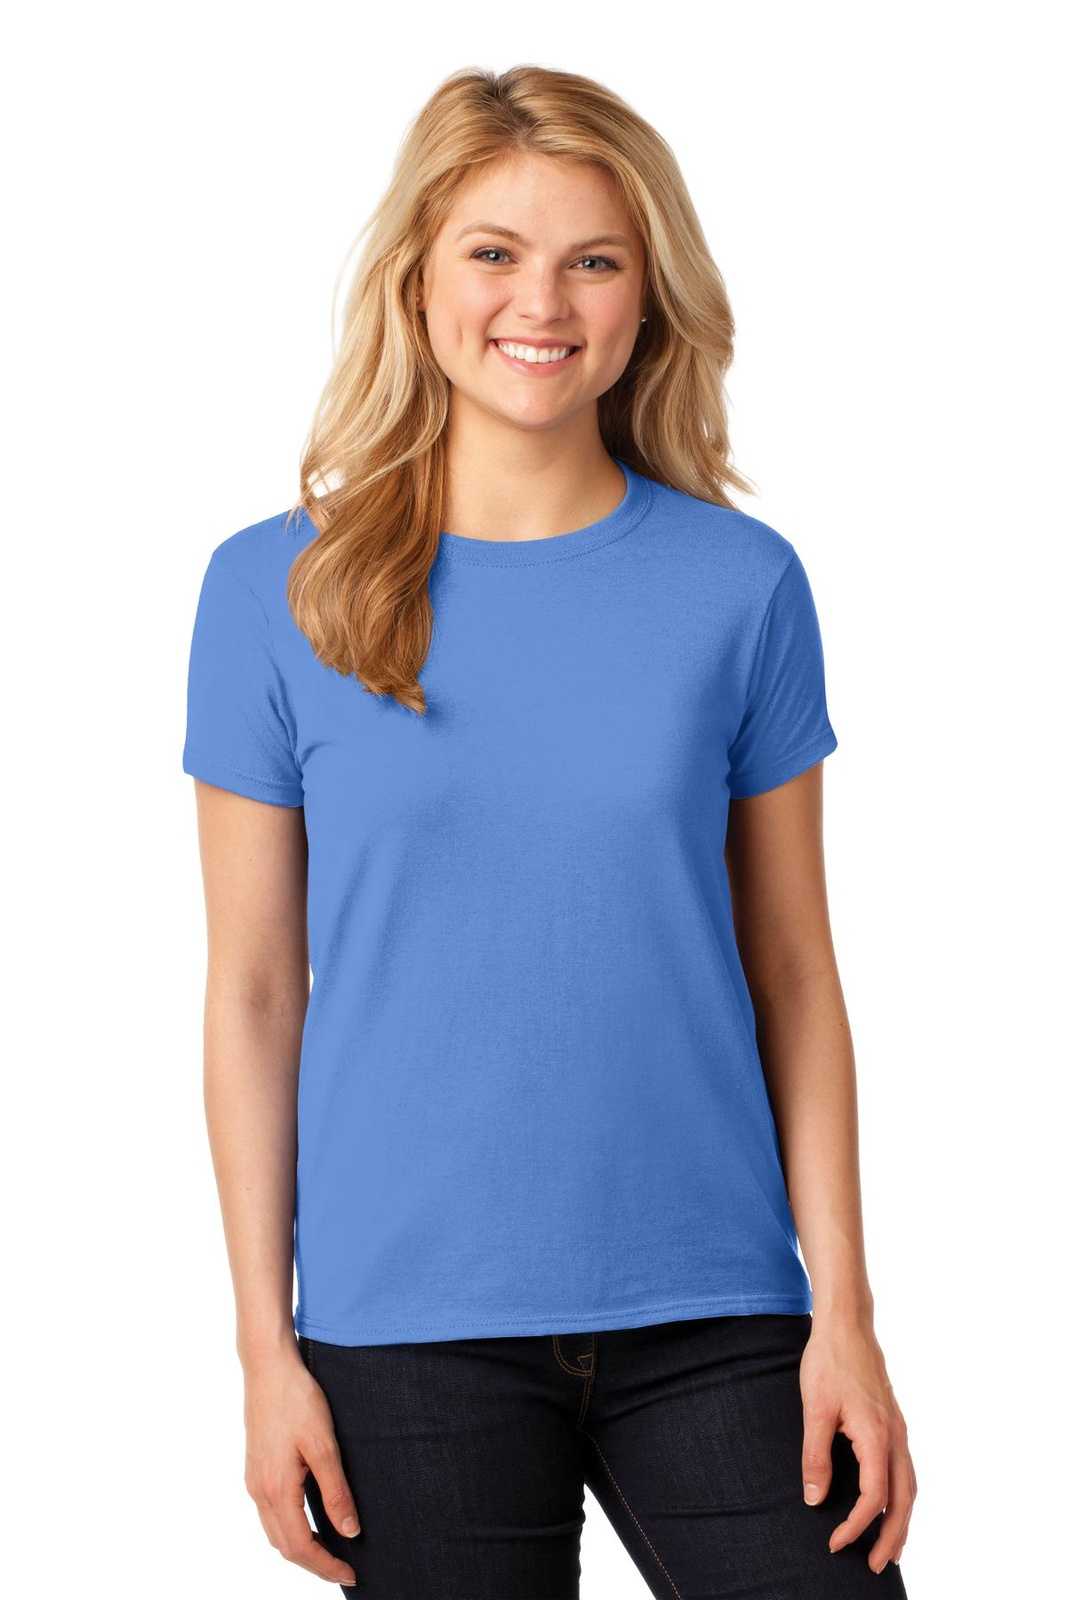 Gildan 5000L Ladies Heavy Cotton 100% Cotton T-Shirt - Carolina Blue - HIT a Double